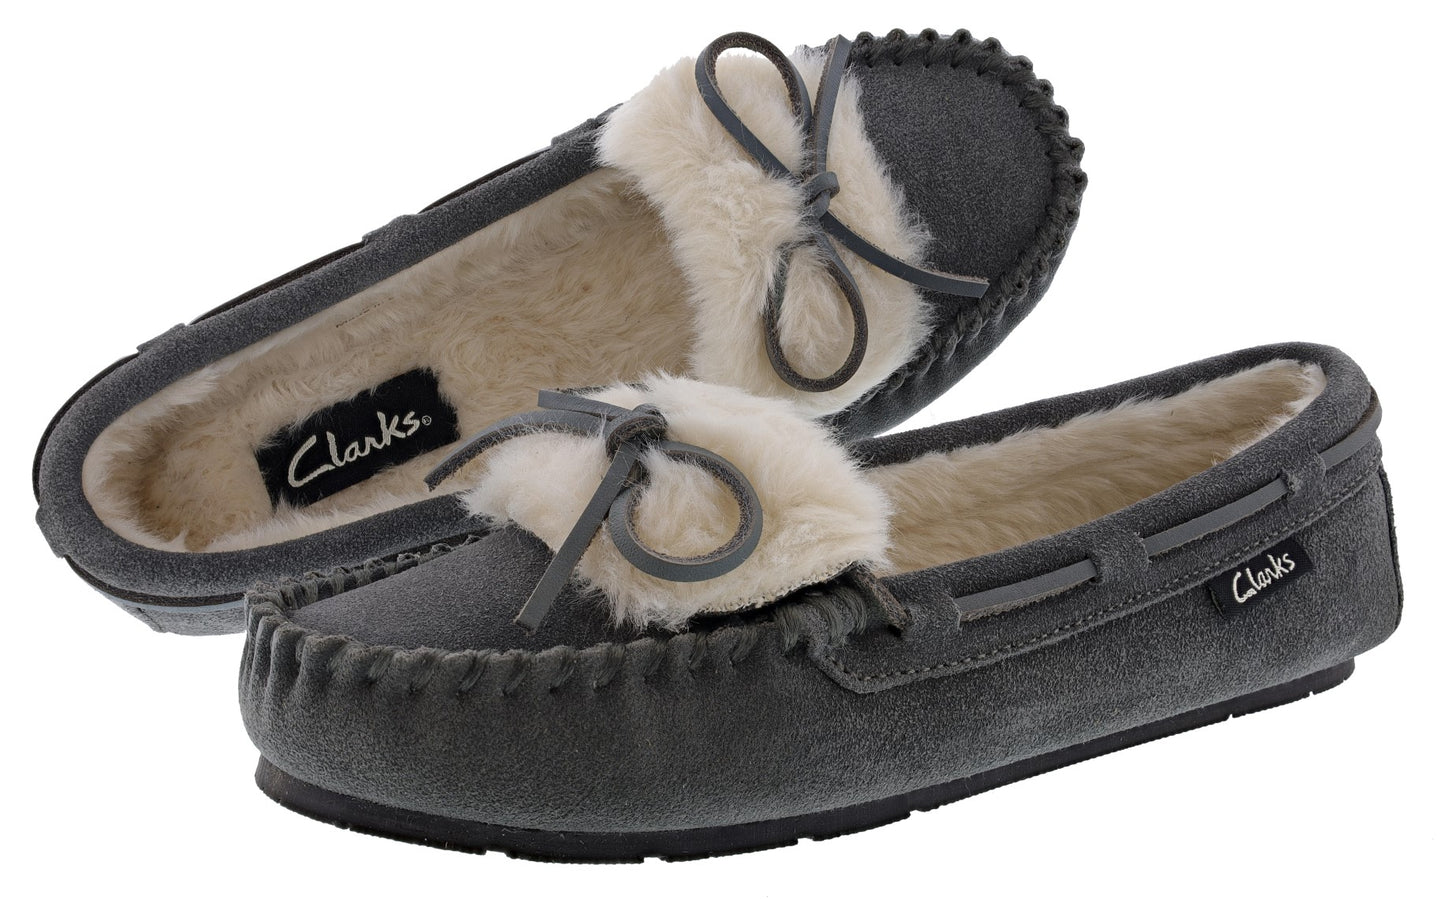 Clarks Women's Indoor Outdoor Winter Clog Slippers Ginger – Shoe City